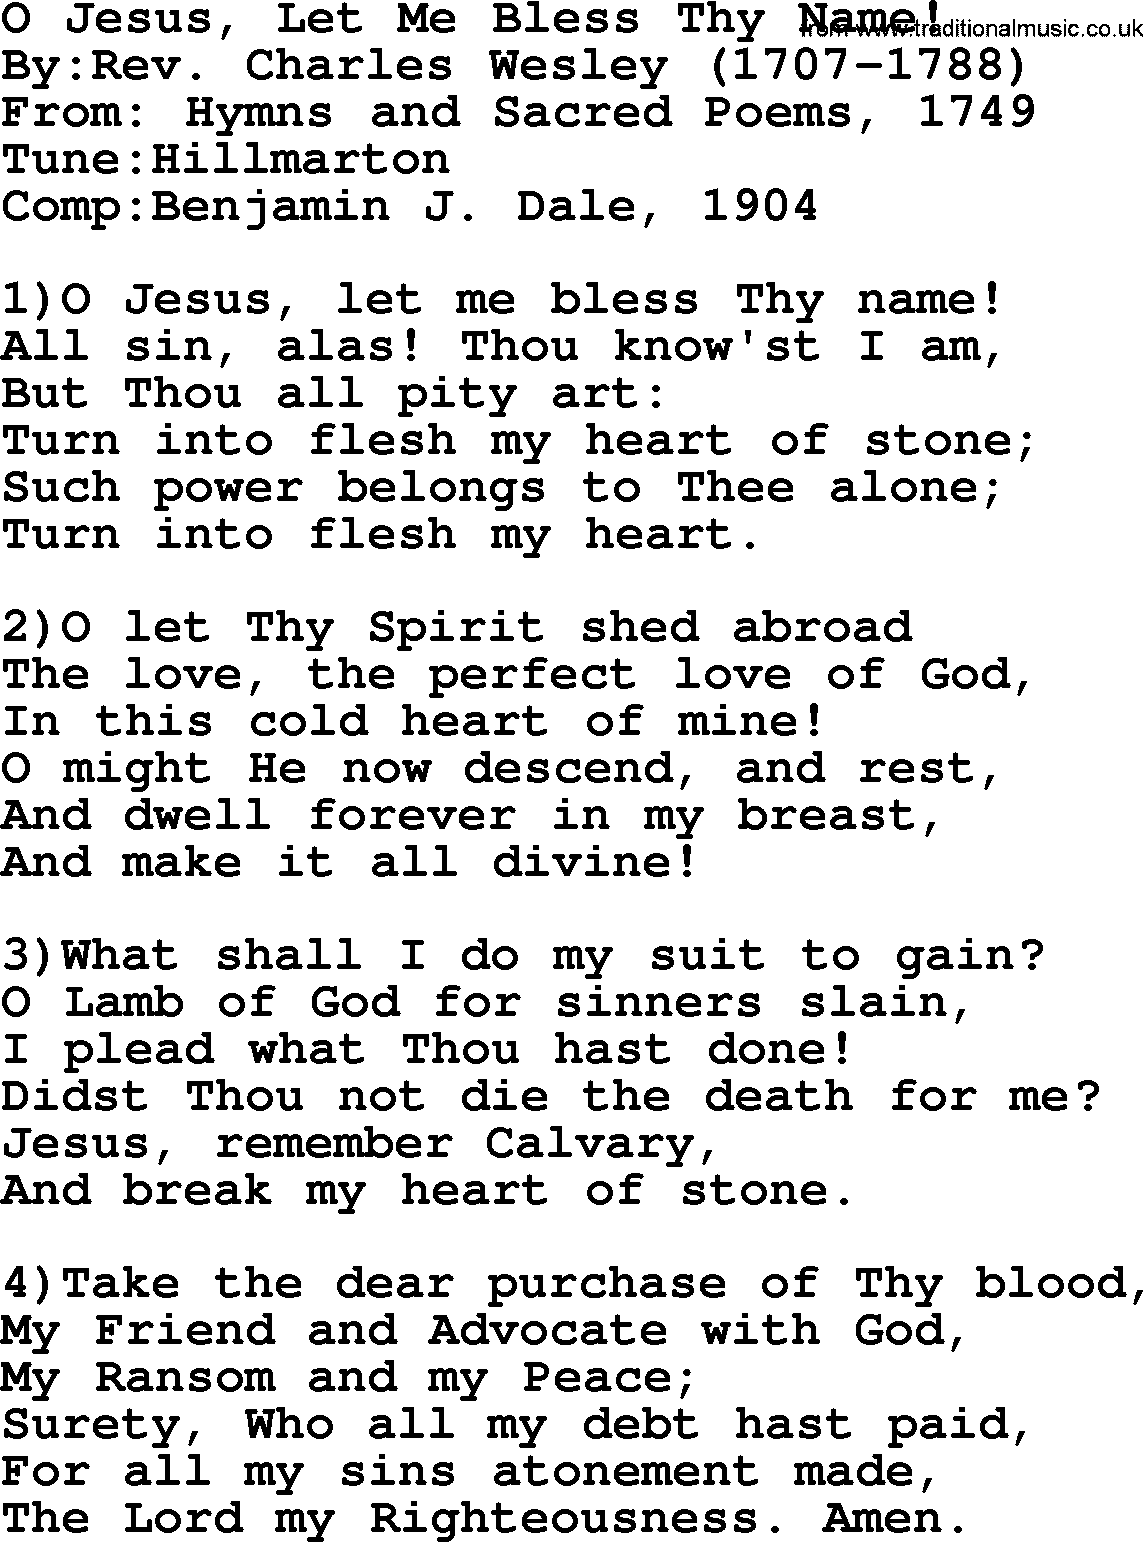 Methodist Hymn: O Jesus, Let Me Bless Thy Name!, lyrics